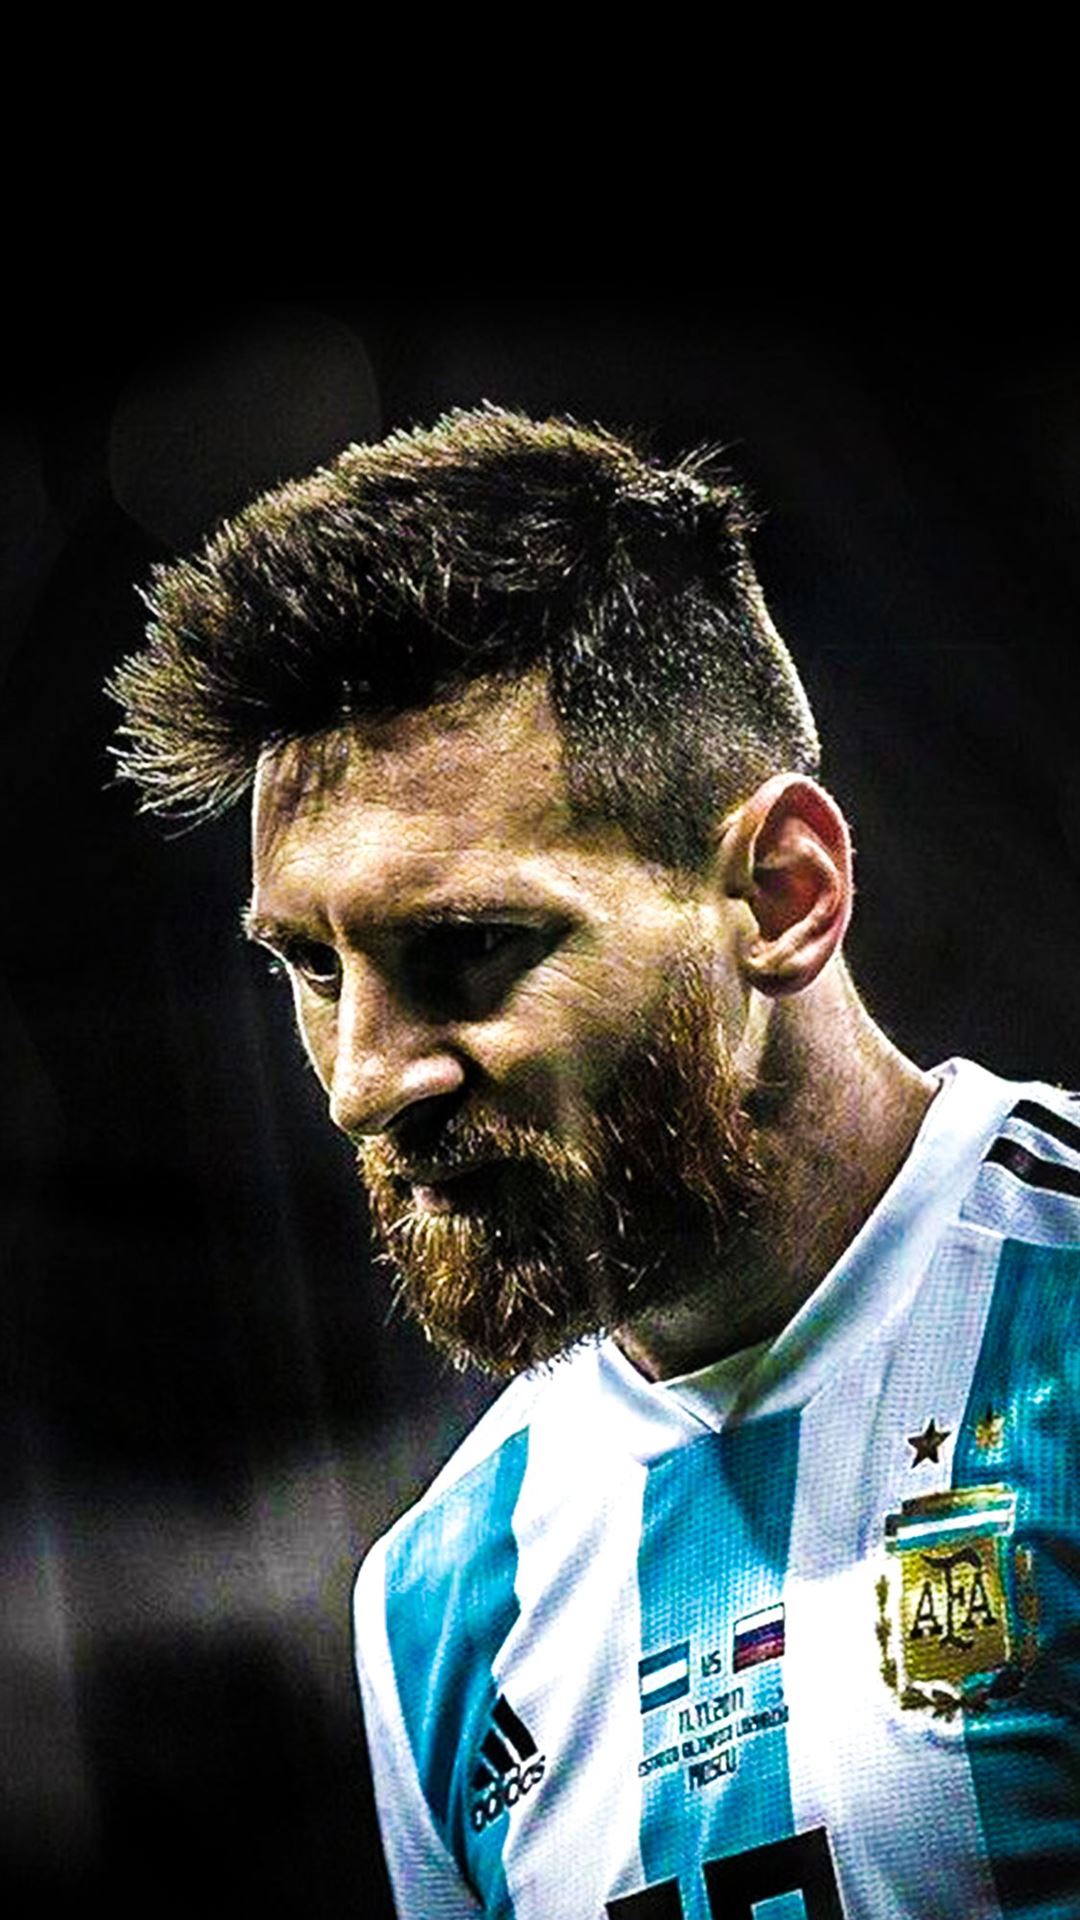 Messi là một trong những cầu thủ xuất sắc nhất trong lịch sử bóng đá, và chiến thắng World Cup 2014 của ông làm nên lịch sử. Hãy tải xuống một hình nền World Cup của Messi để tôn vinh danh hiệu vĩ đại này.